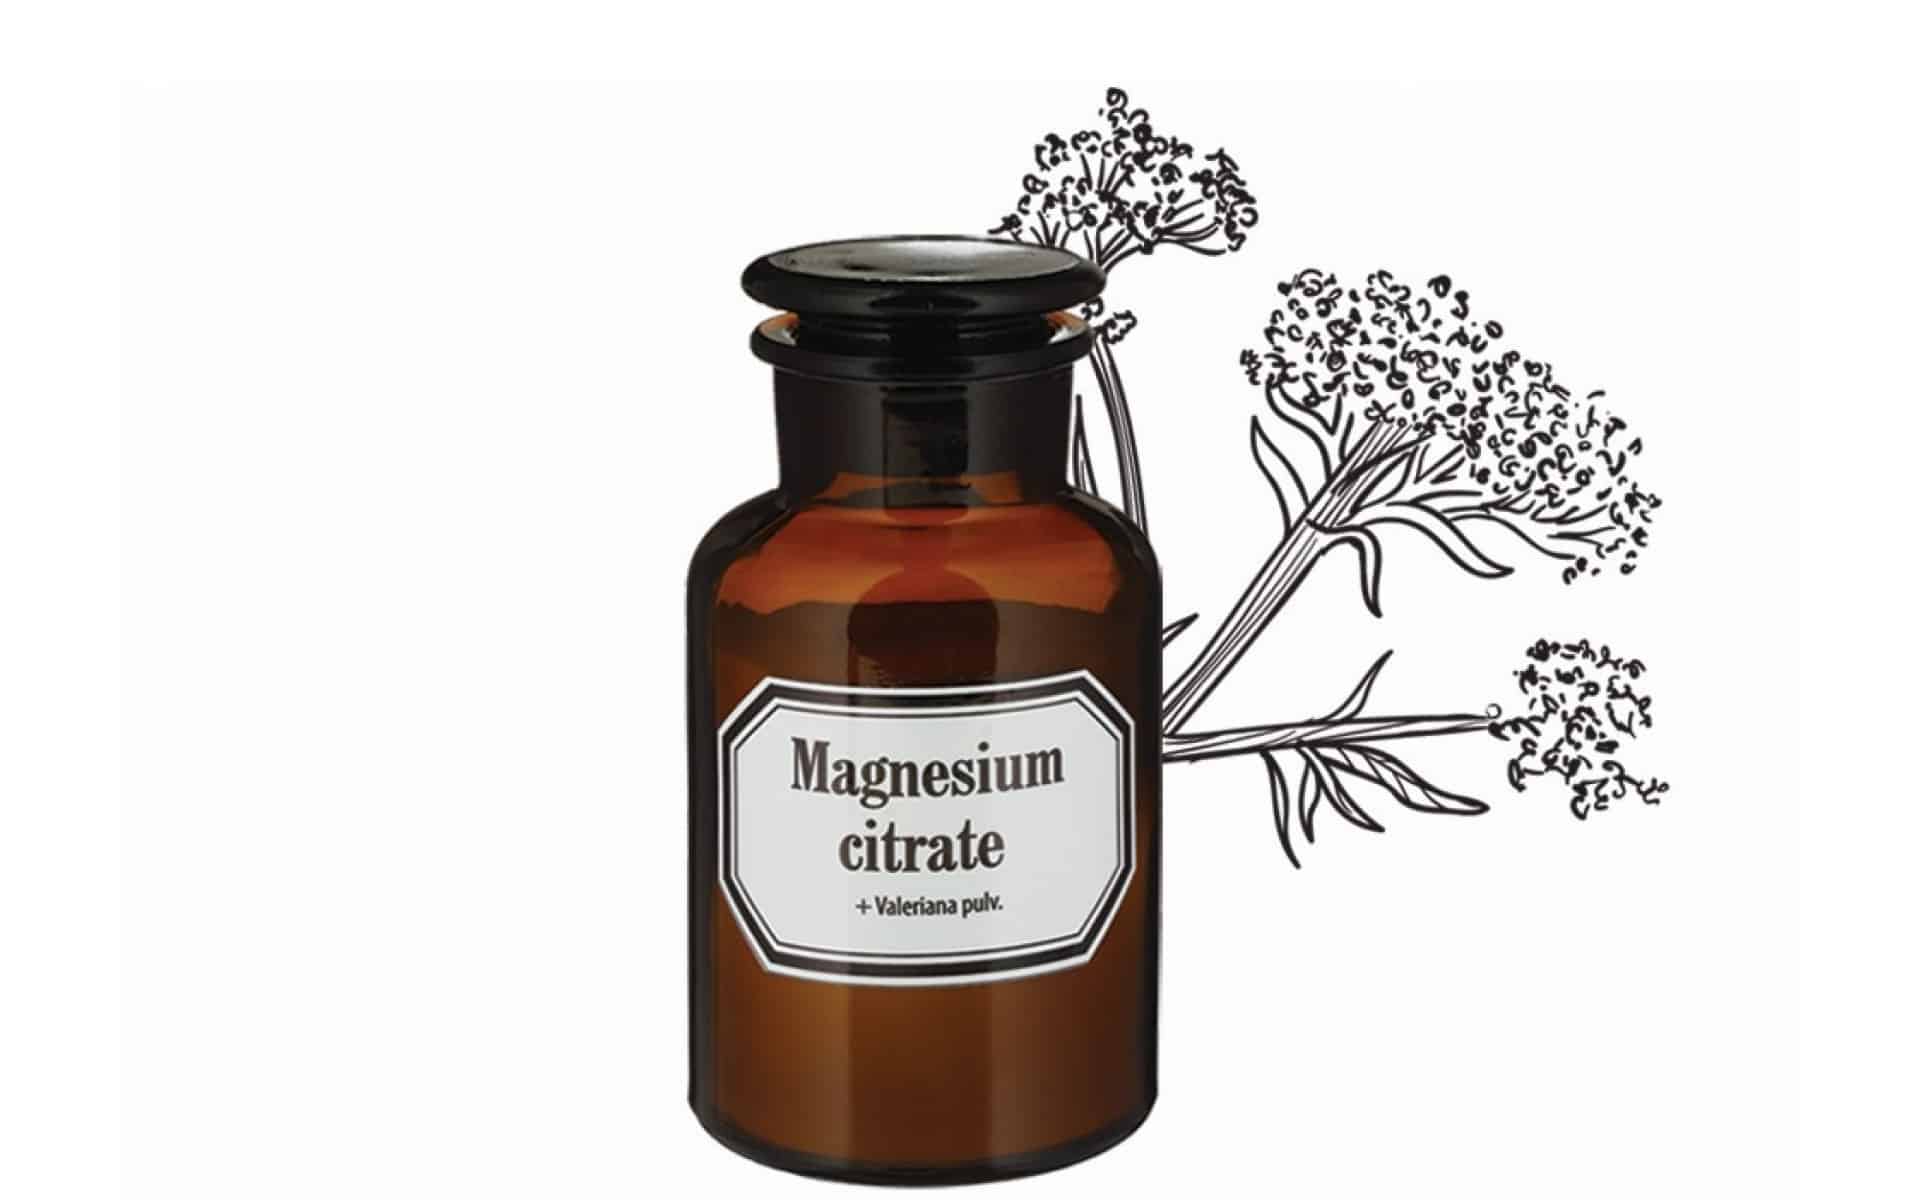 OLD PHARMA Magnesium citrate + Valerian порошок 7290010159505